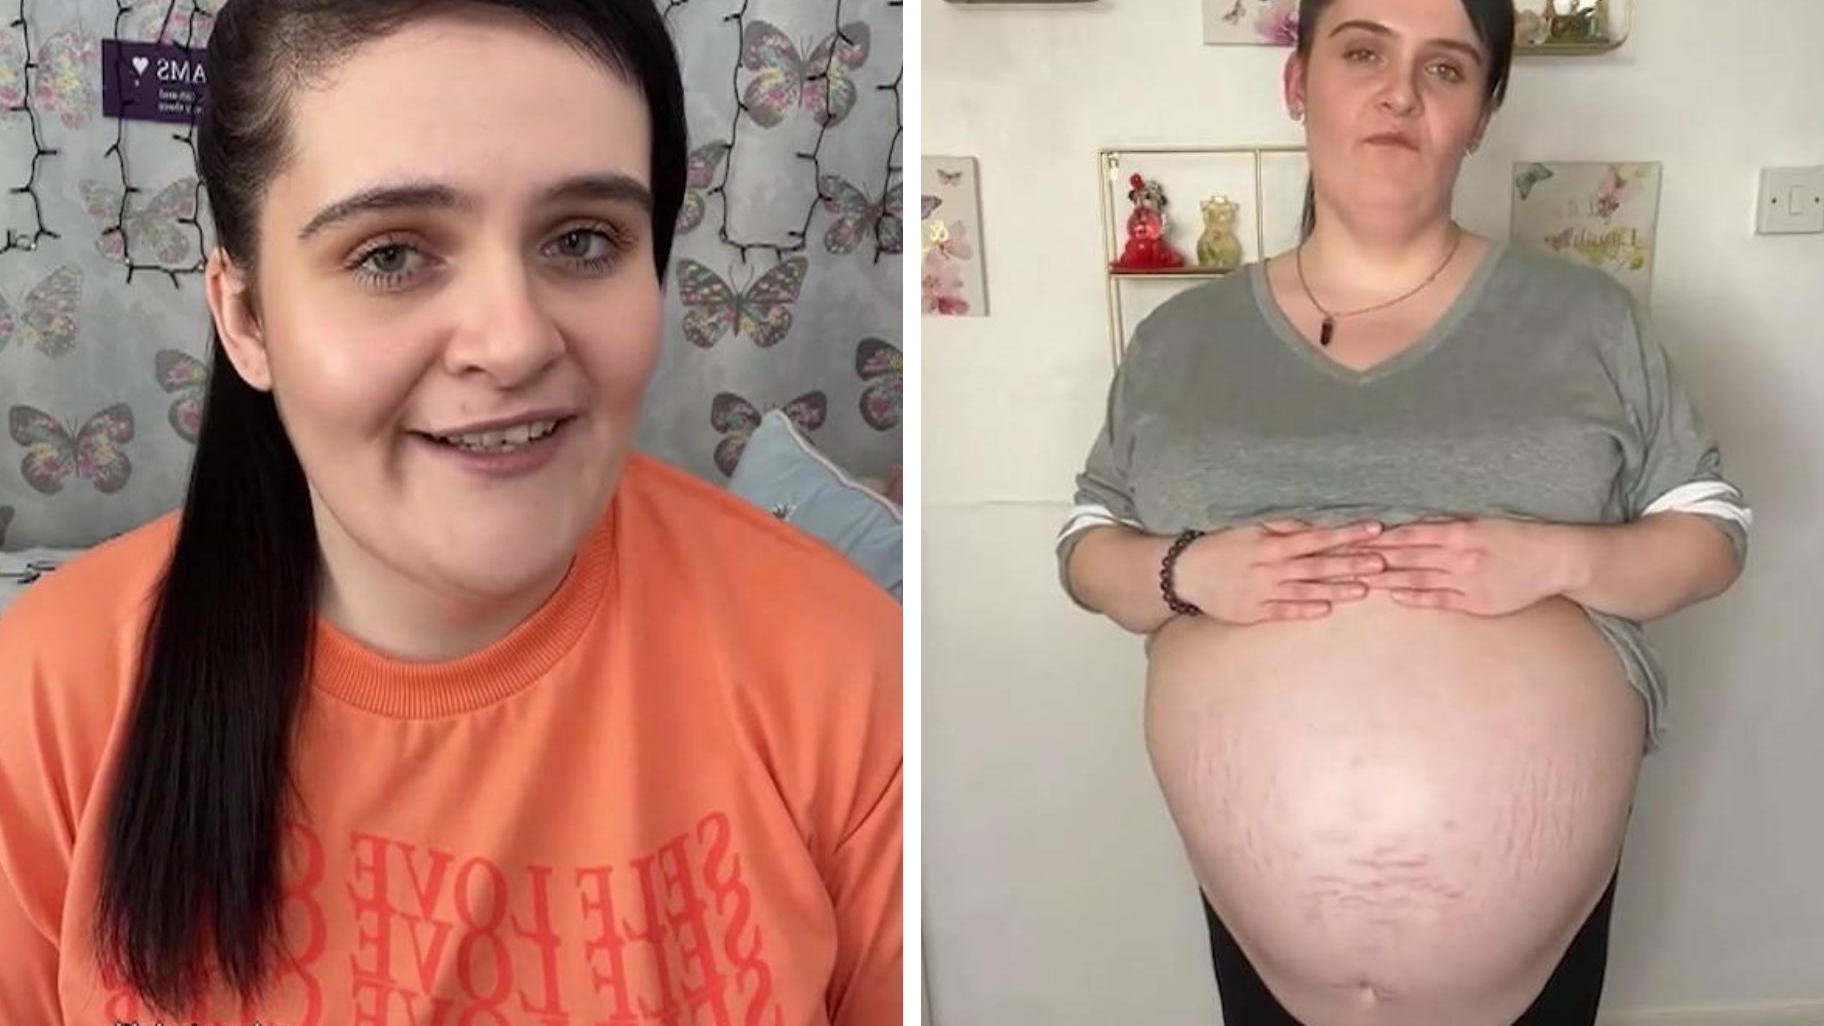 Frau hat 40-Zentimeter-Zyste im Bauch Menschen glauben: Sie ist schwanger!